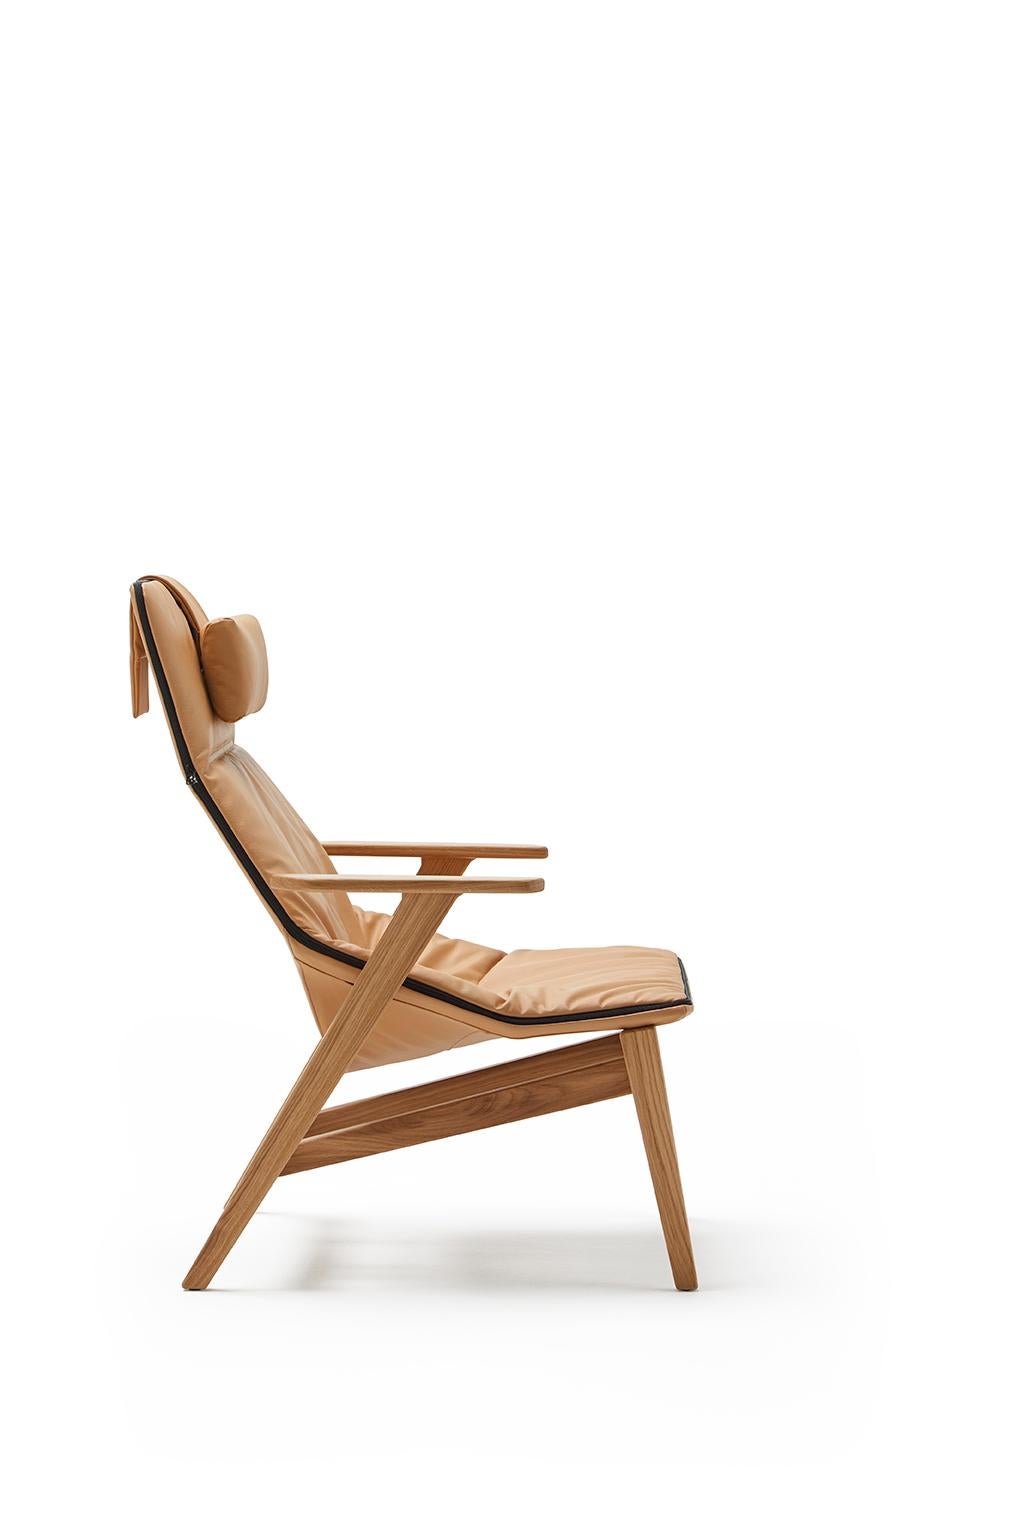 Eleganter und moderner Sessel mit hoher Rückenlehne und einem entspannten Design, das ihn für Wohnungen, öffentliche Einrichtungen, Besprechungen, Collaboration-Räume, Hotels und Büros geeignet macht.

Ace ist mit oder ohne Armlehnen, mit Metall-